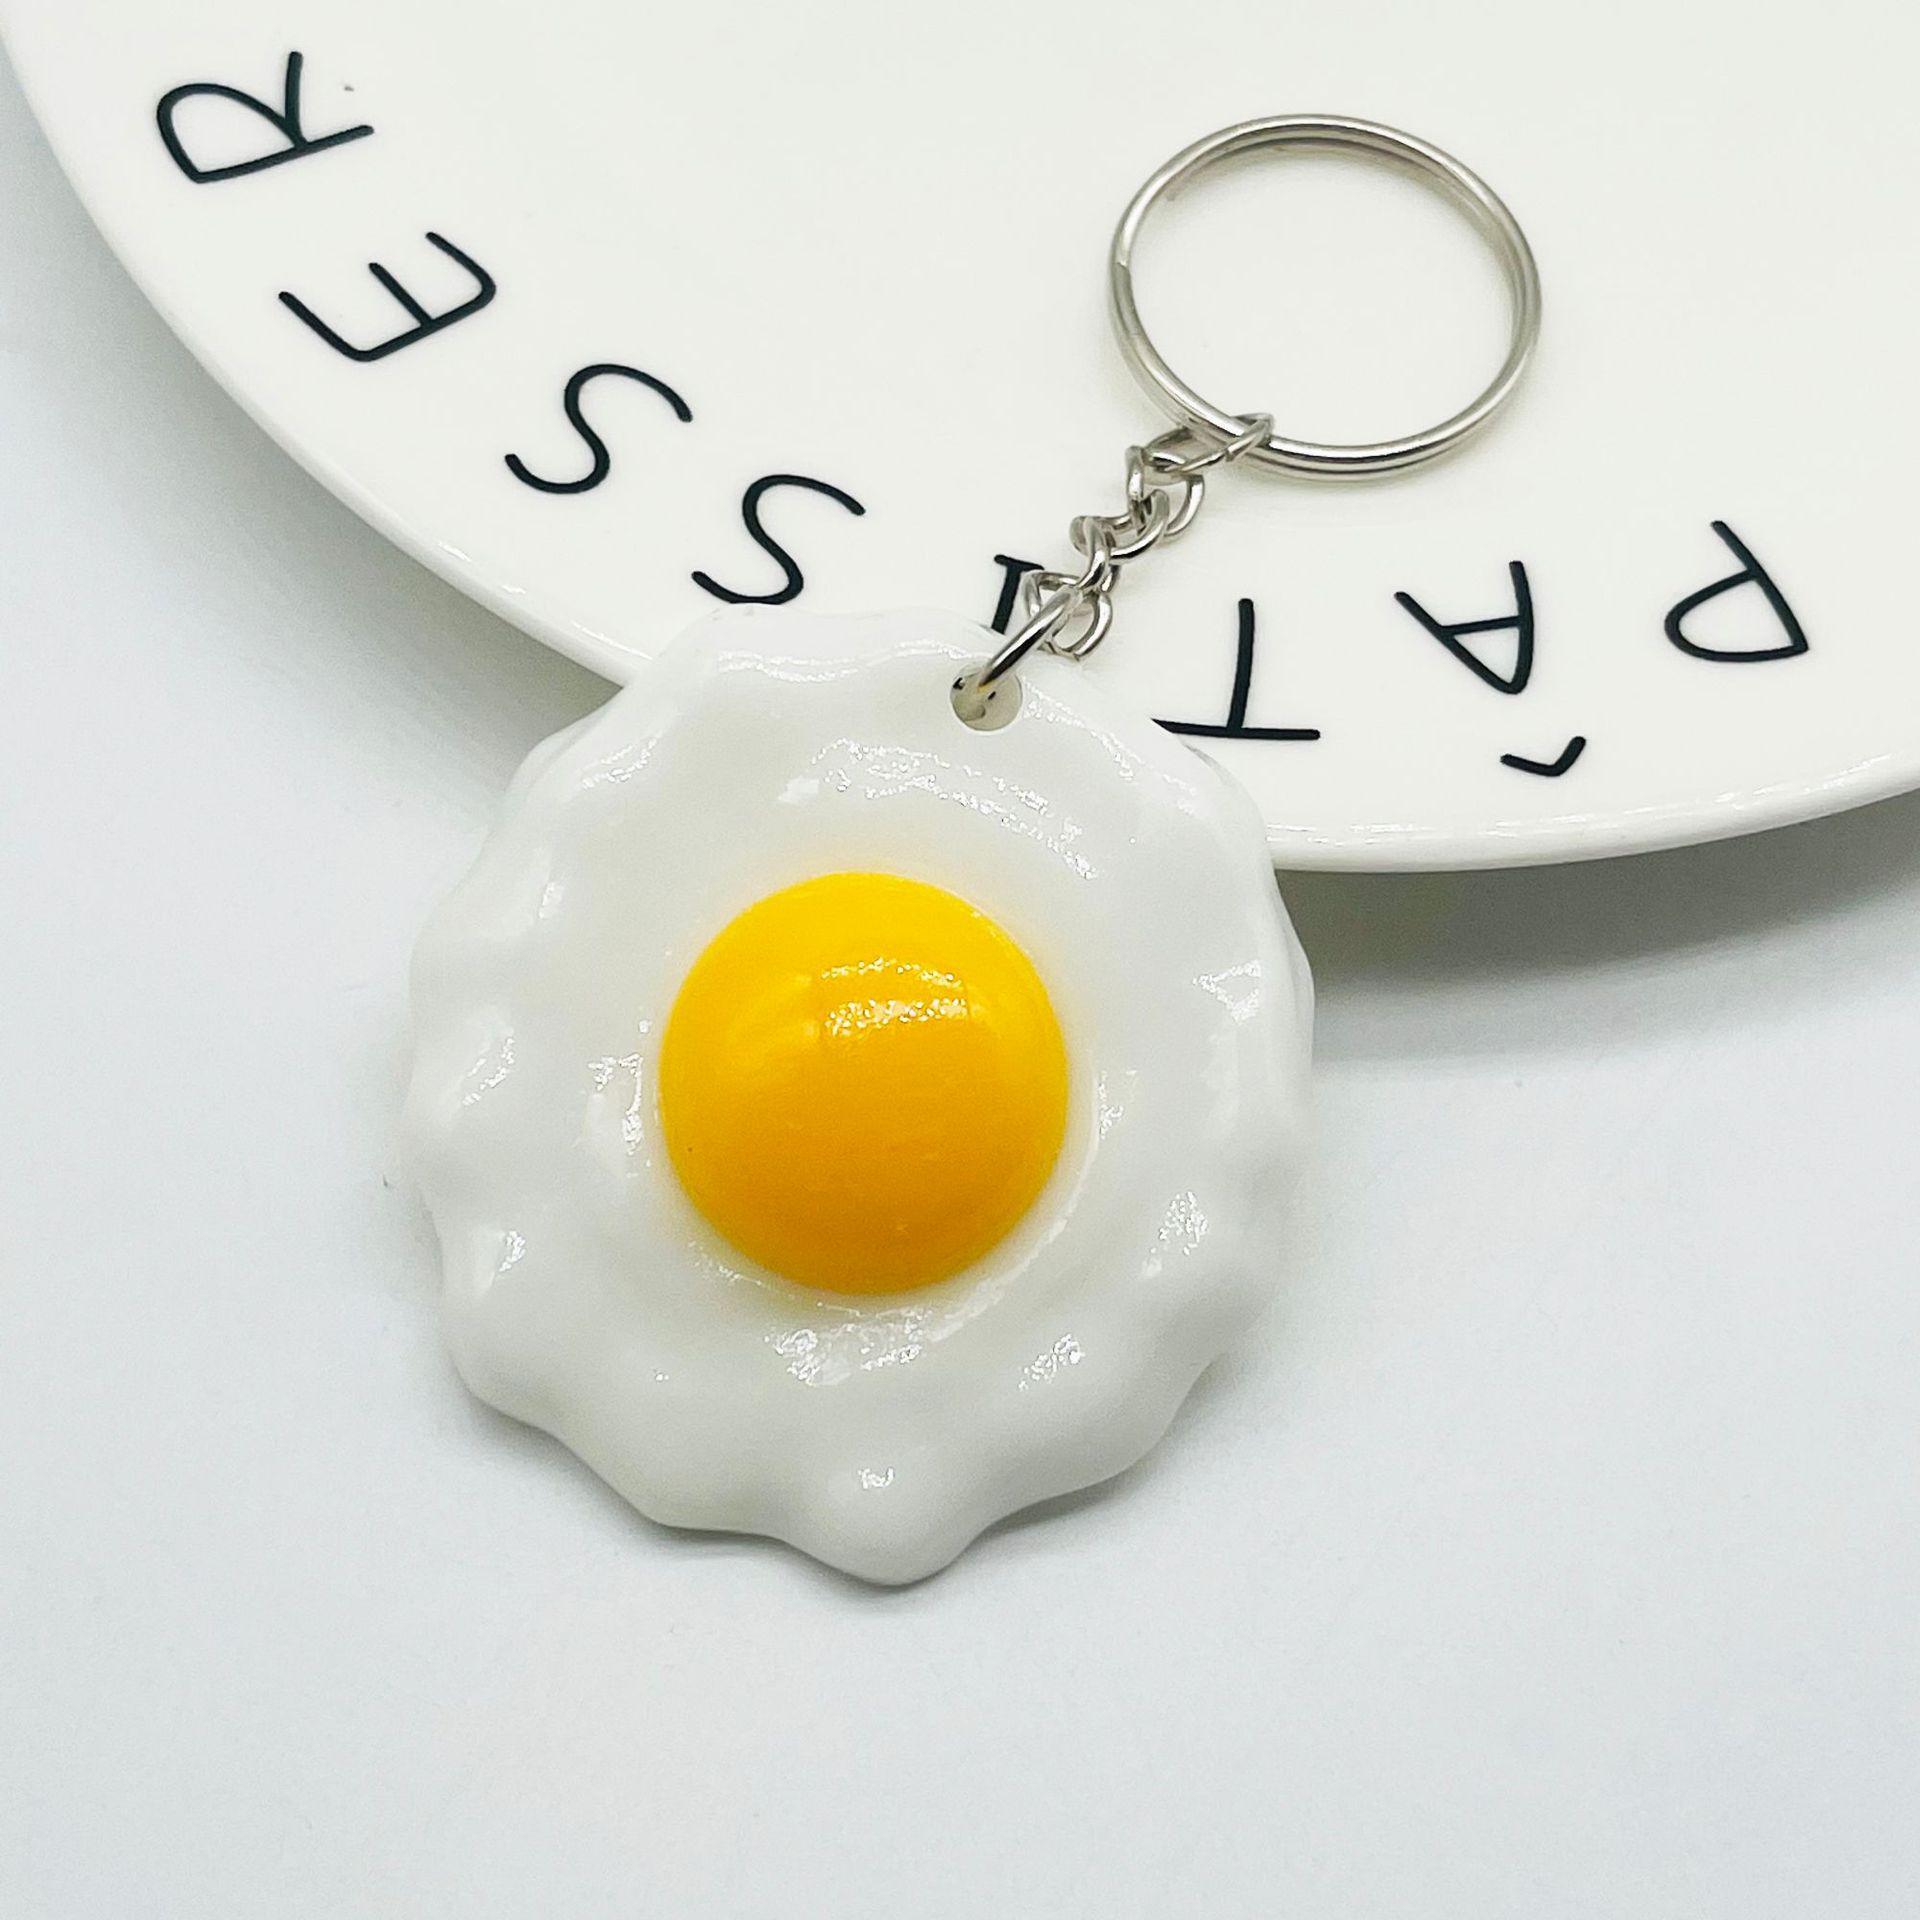 Toplu Fiyat Simülasyonu Yumurta Anahtarlık Kolye Reçinesi Kızarmış Yumurta Yaratıcı Gıda Anahtarları Çanta Araç Ticari Takı Hediye Aksesuarları